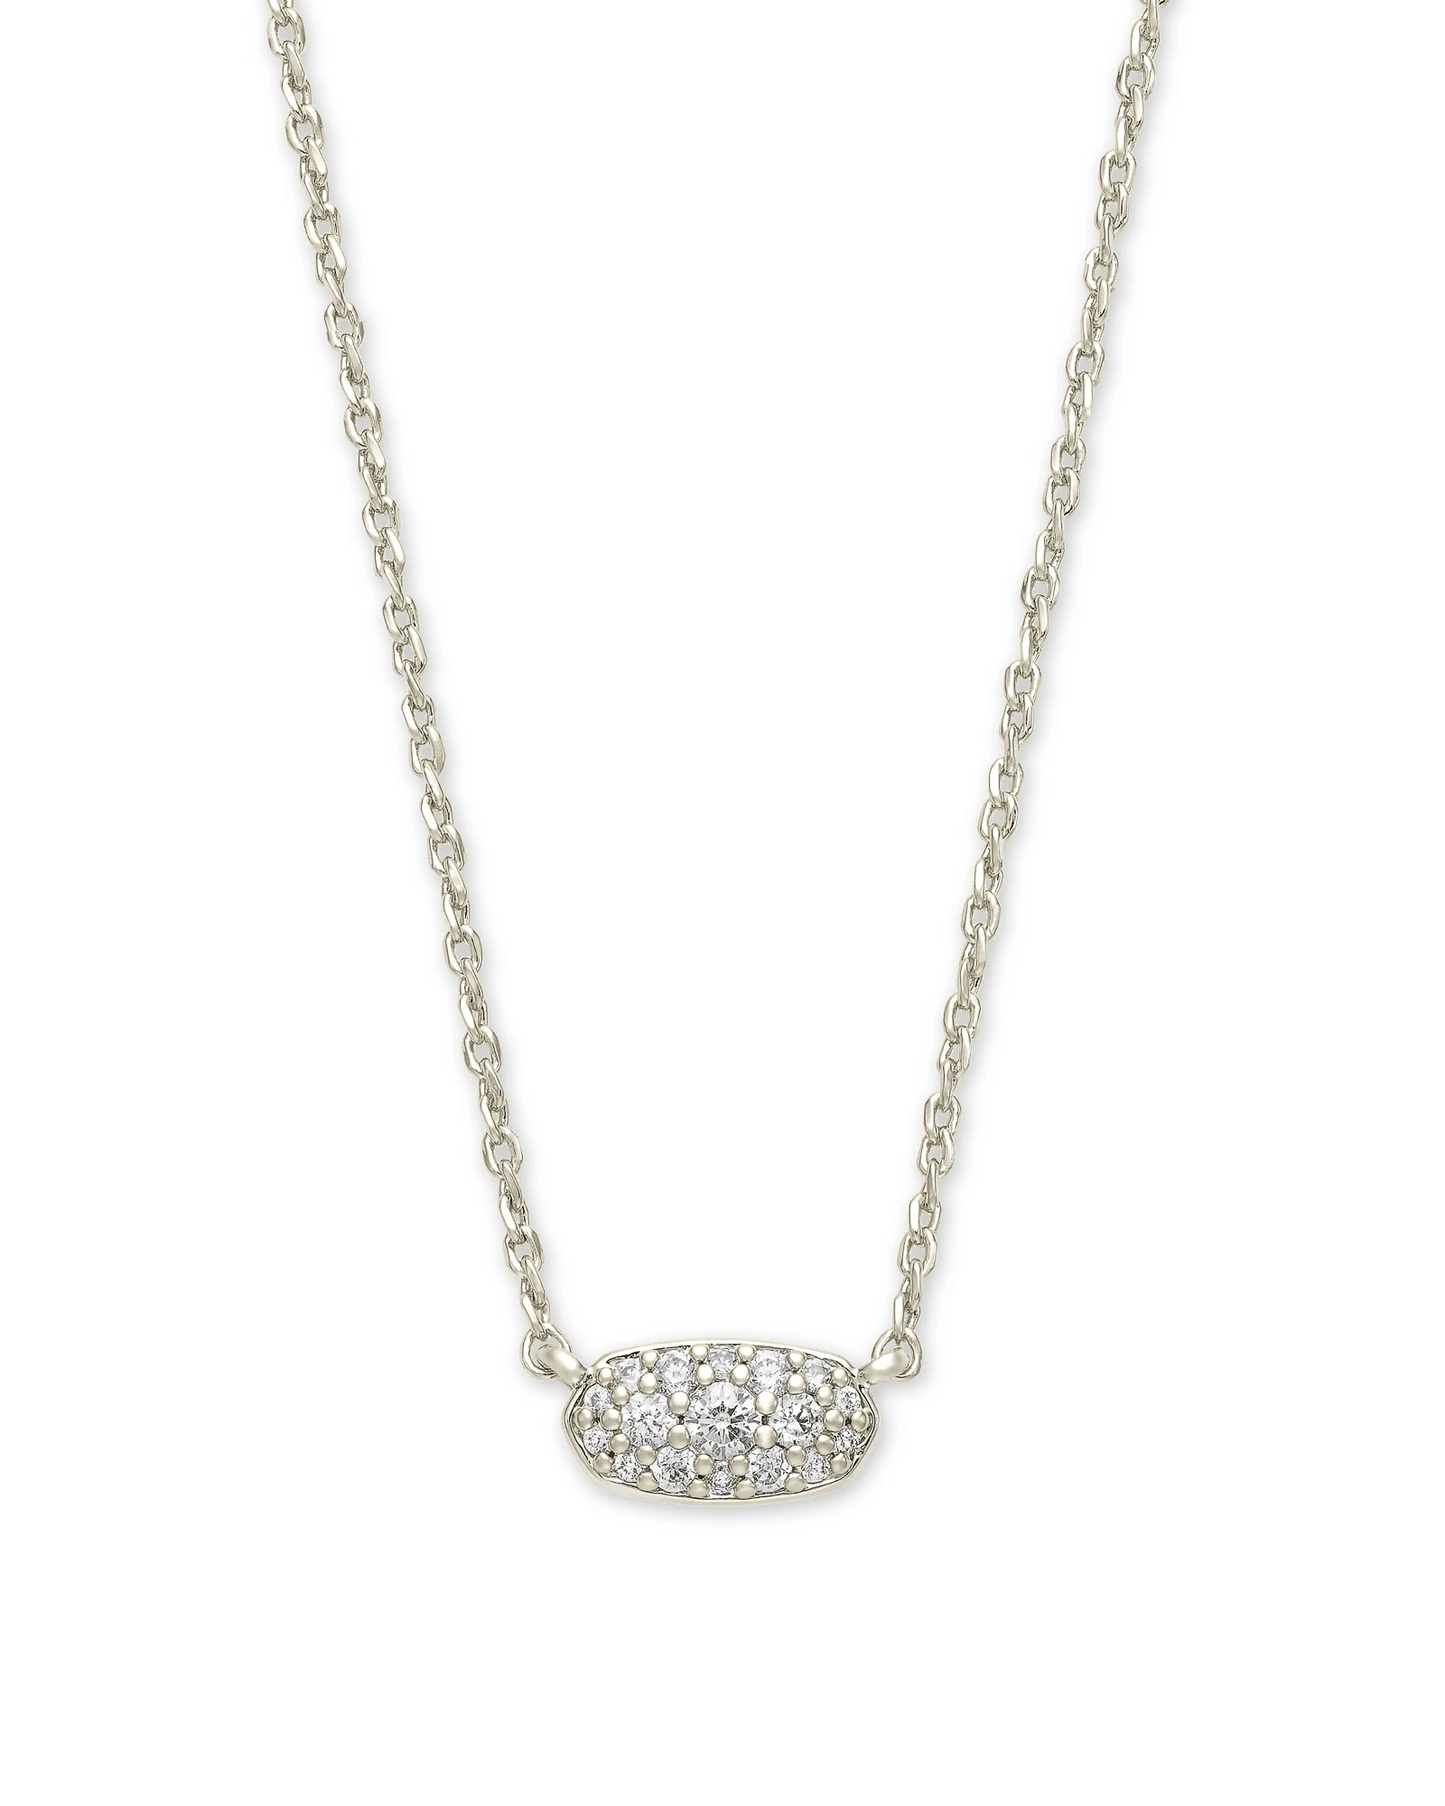 Kendra Scott Women - Accessories - Earrings Grayson Silver Pendant Necklace in White Crystal | Kendra Scott